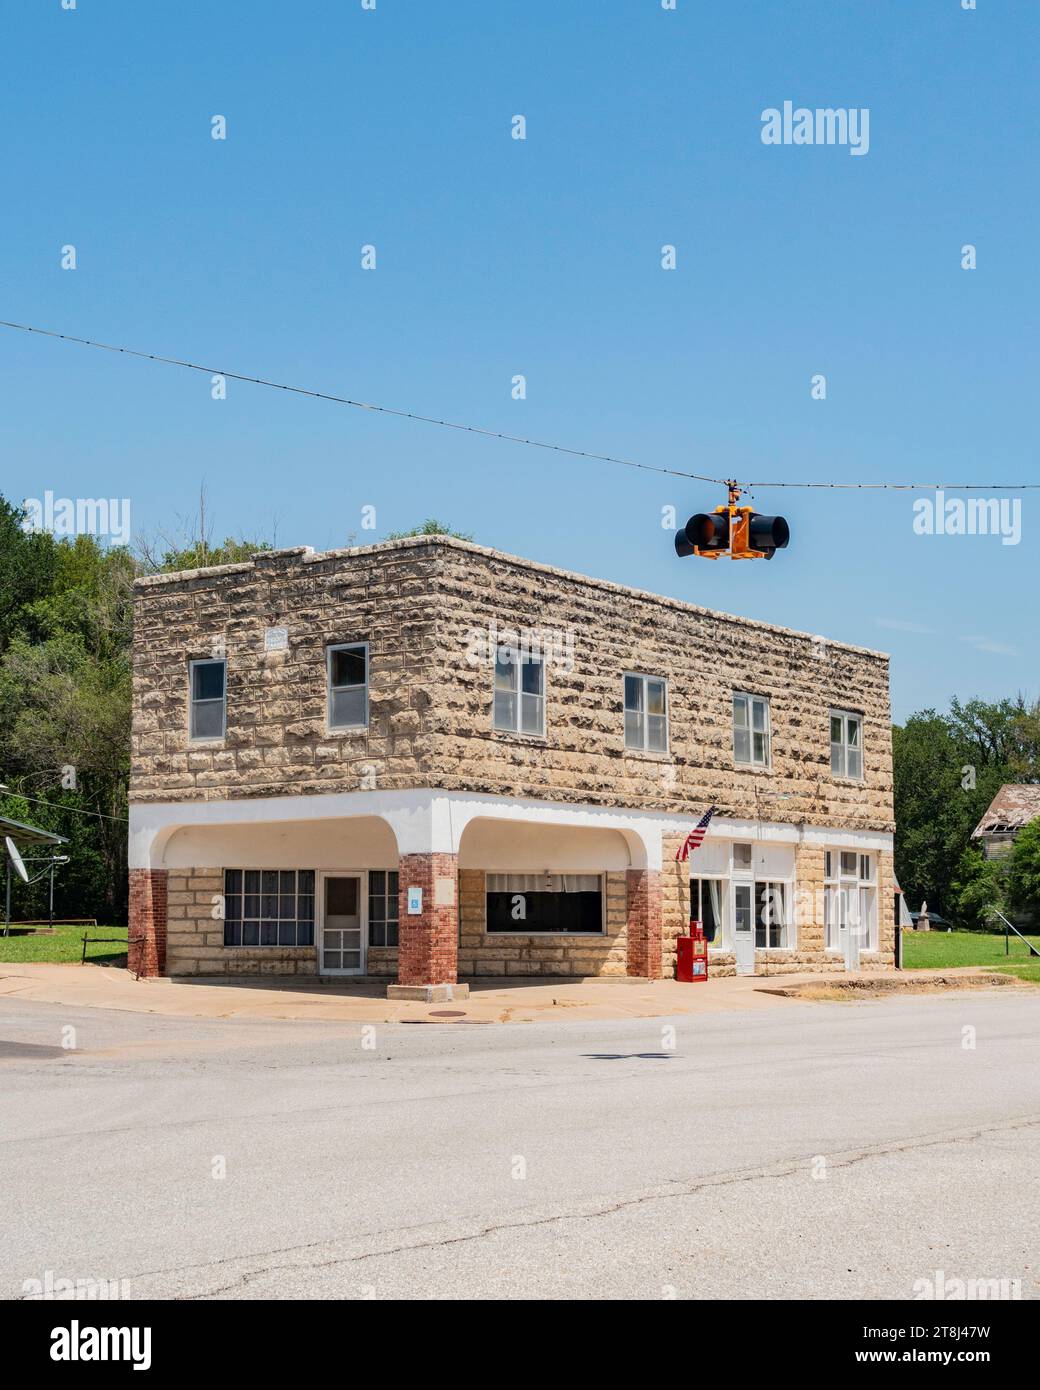 Das Cambridge, Kansas I00F Gebäude und cattlemans' Café aus Sandstein, ein altes historisches Gebäude im Westen von Kansas, USA. Stockfoto